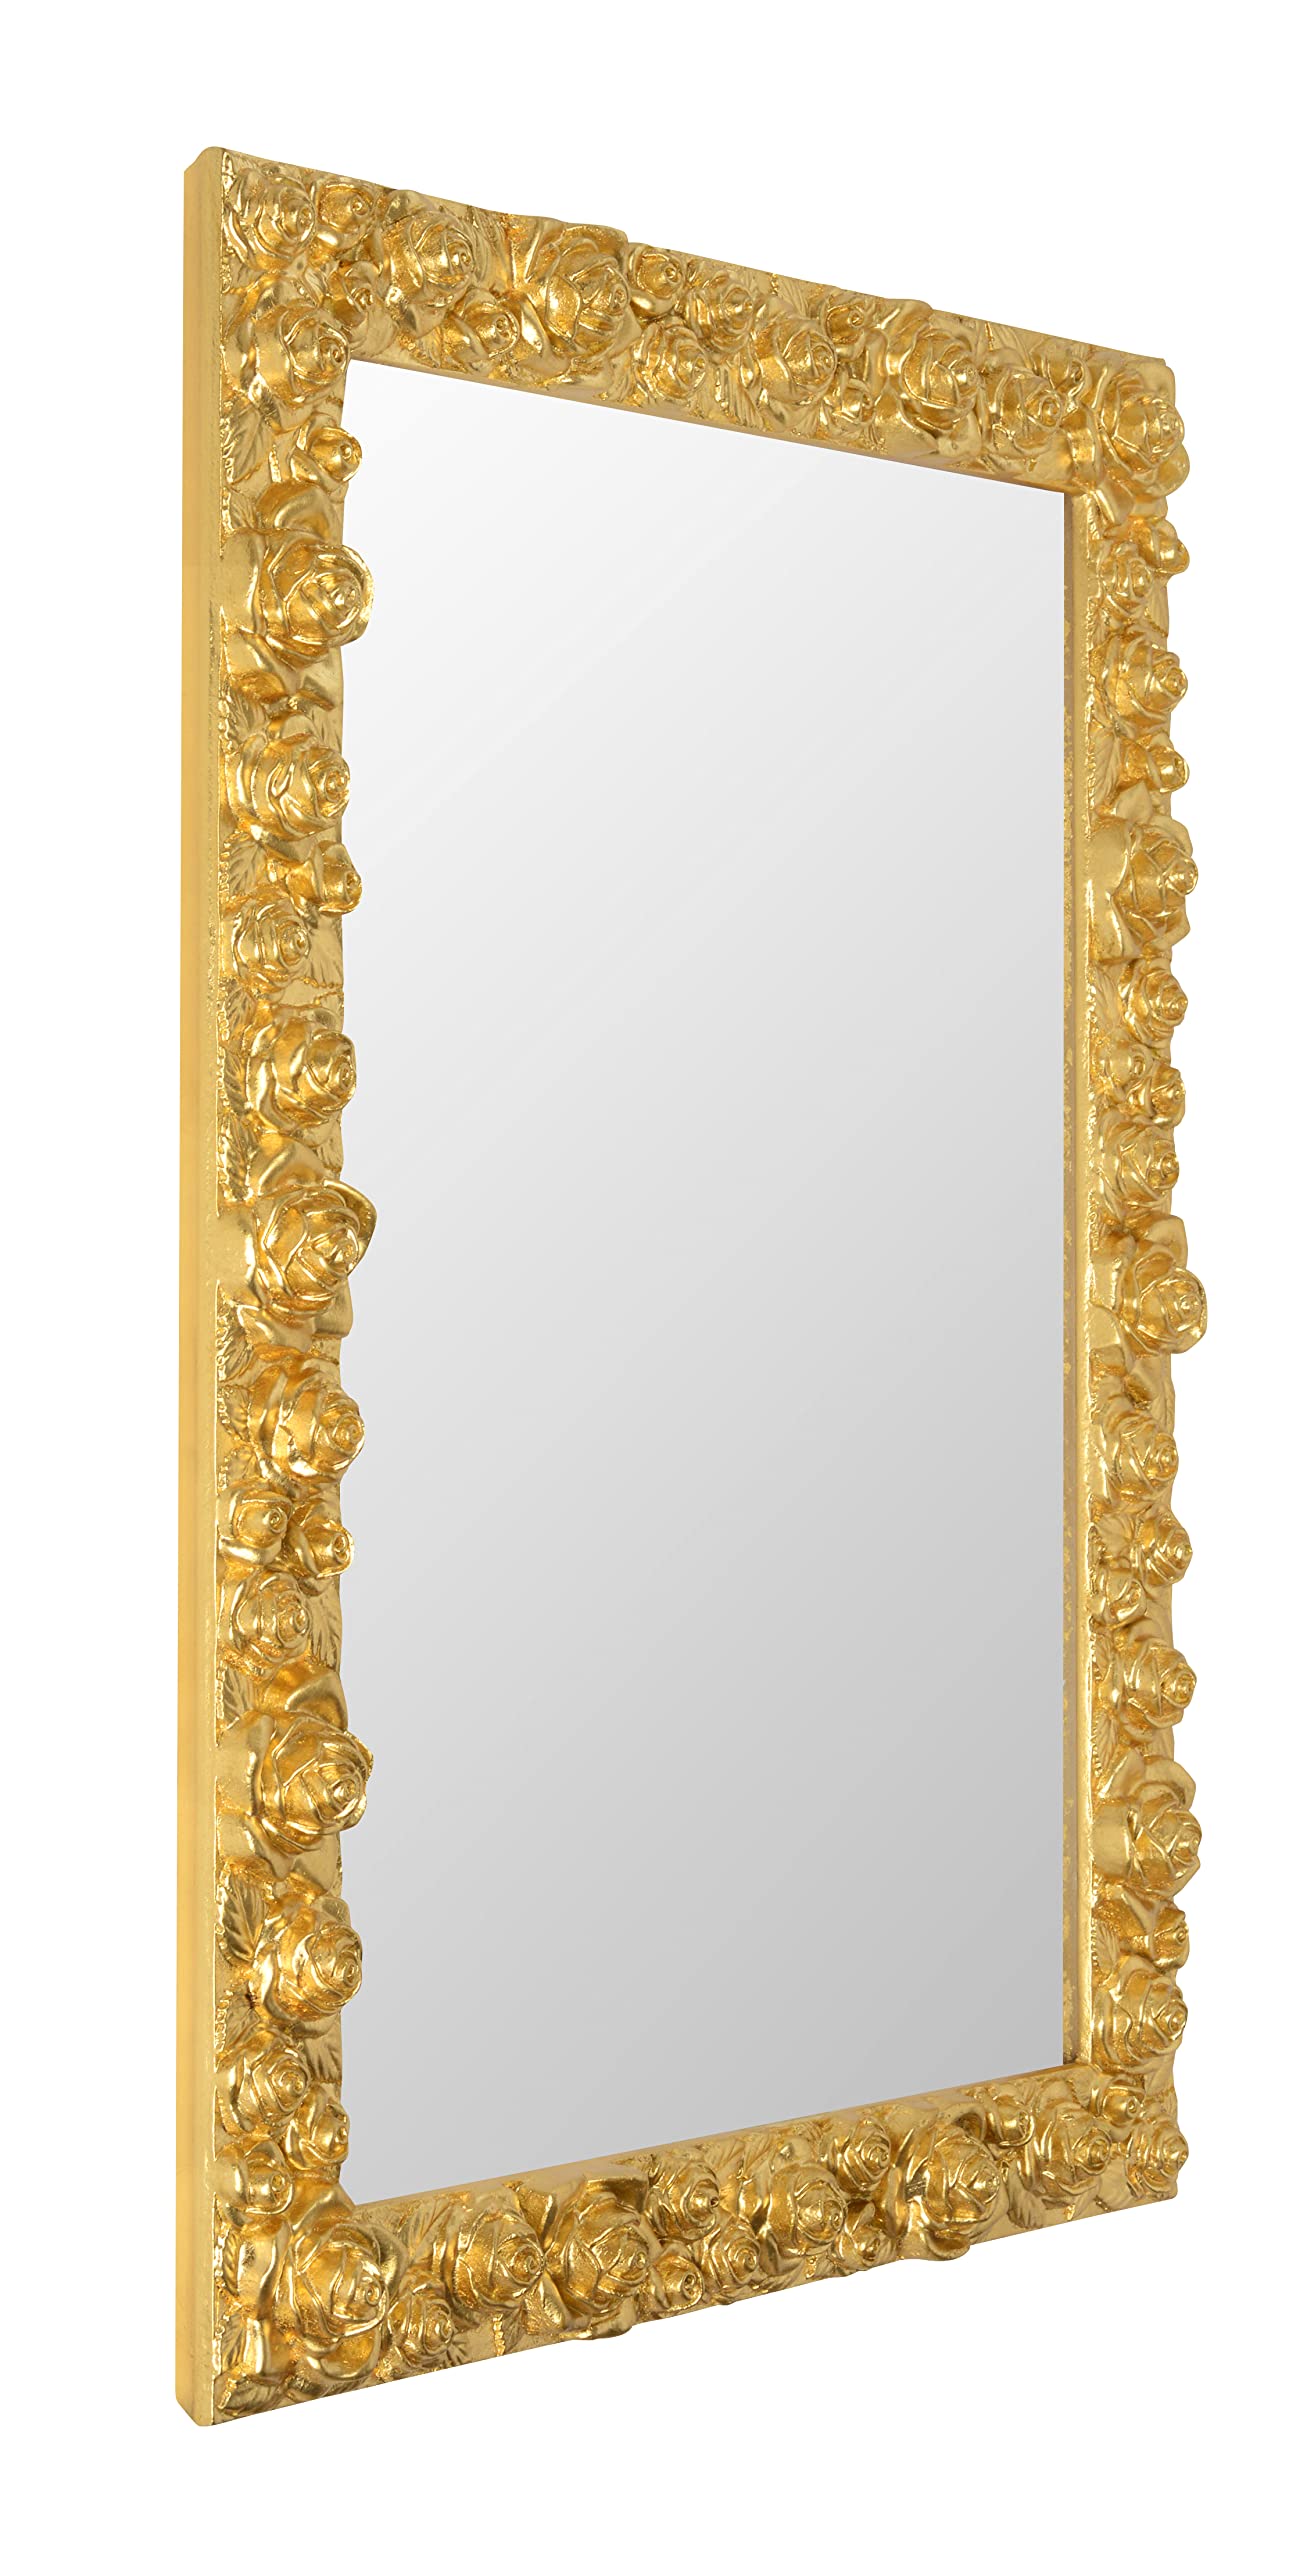 MO.WA Wandspiegel Spiegel Klassisch 62x82 Gold, Dekospiegel rechteckig Blattgold, Spiegel mit Holzrahmen verziert, für Wohnzimmer, Schlafzimmer, Badezimmer, Eingangsraum Flur